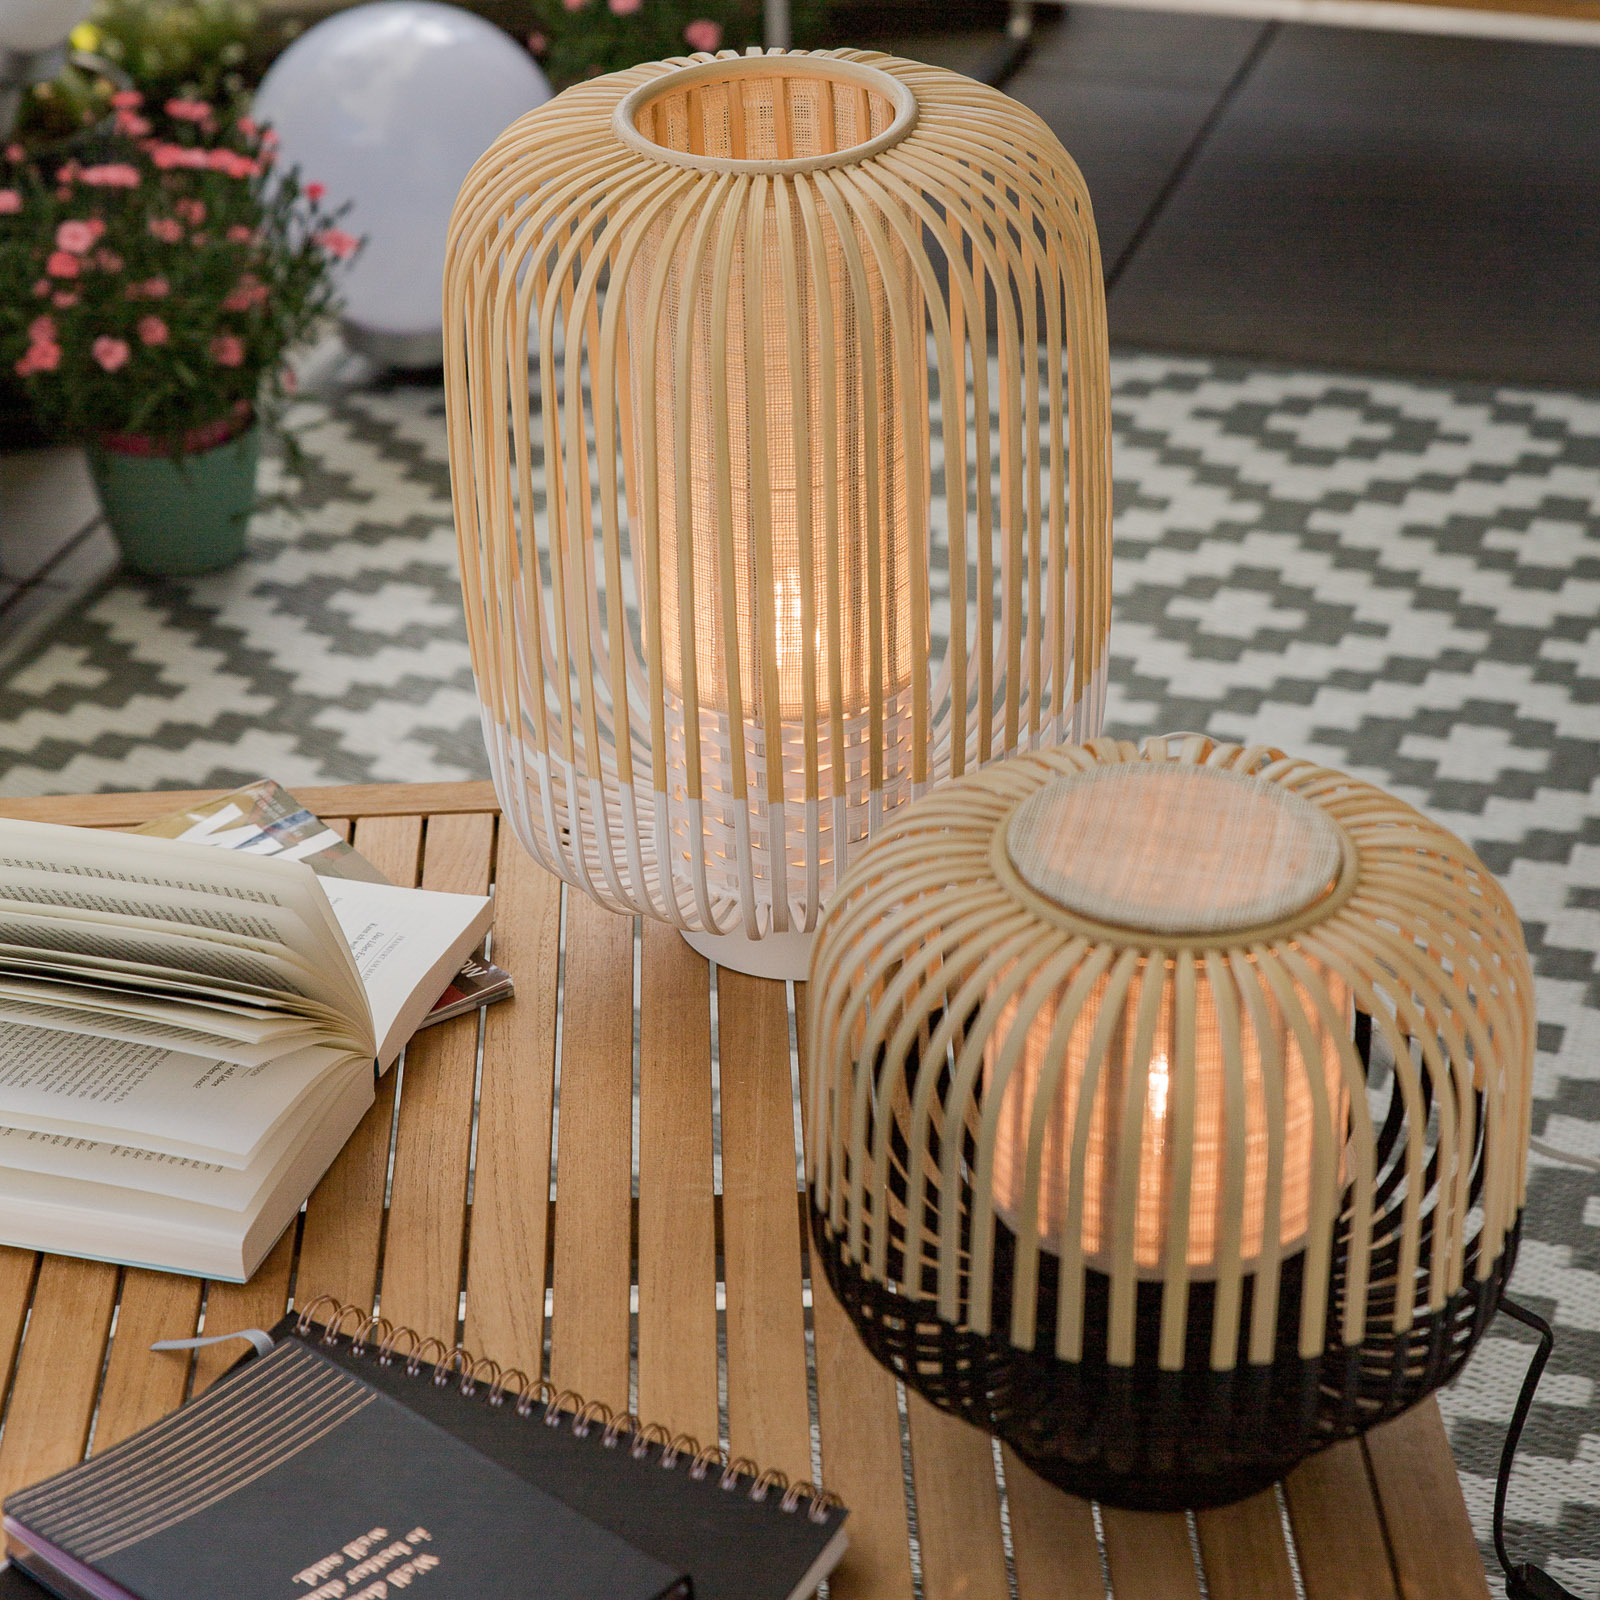 Candeeiro de mesa Forestier Bamboo Light S 24 cm preto